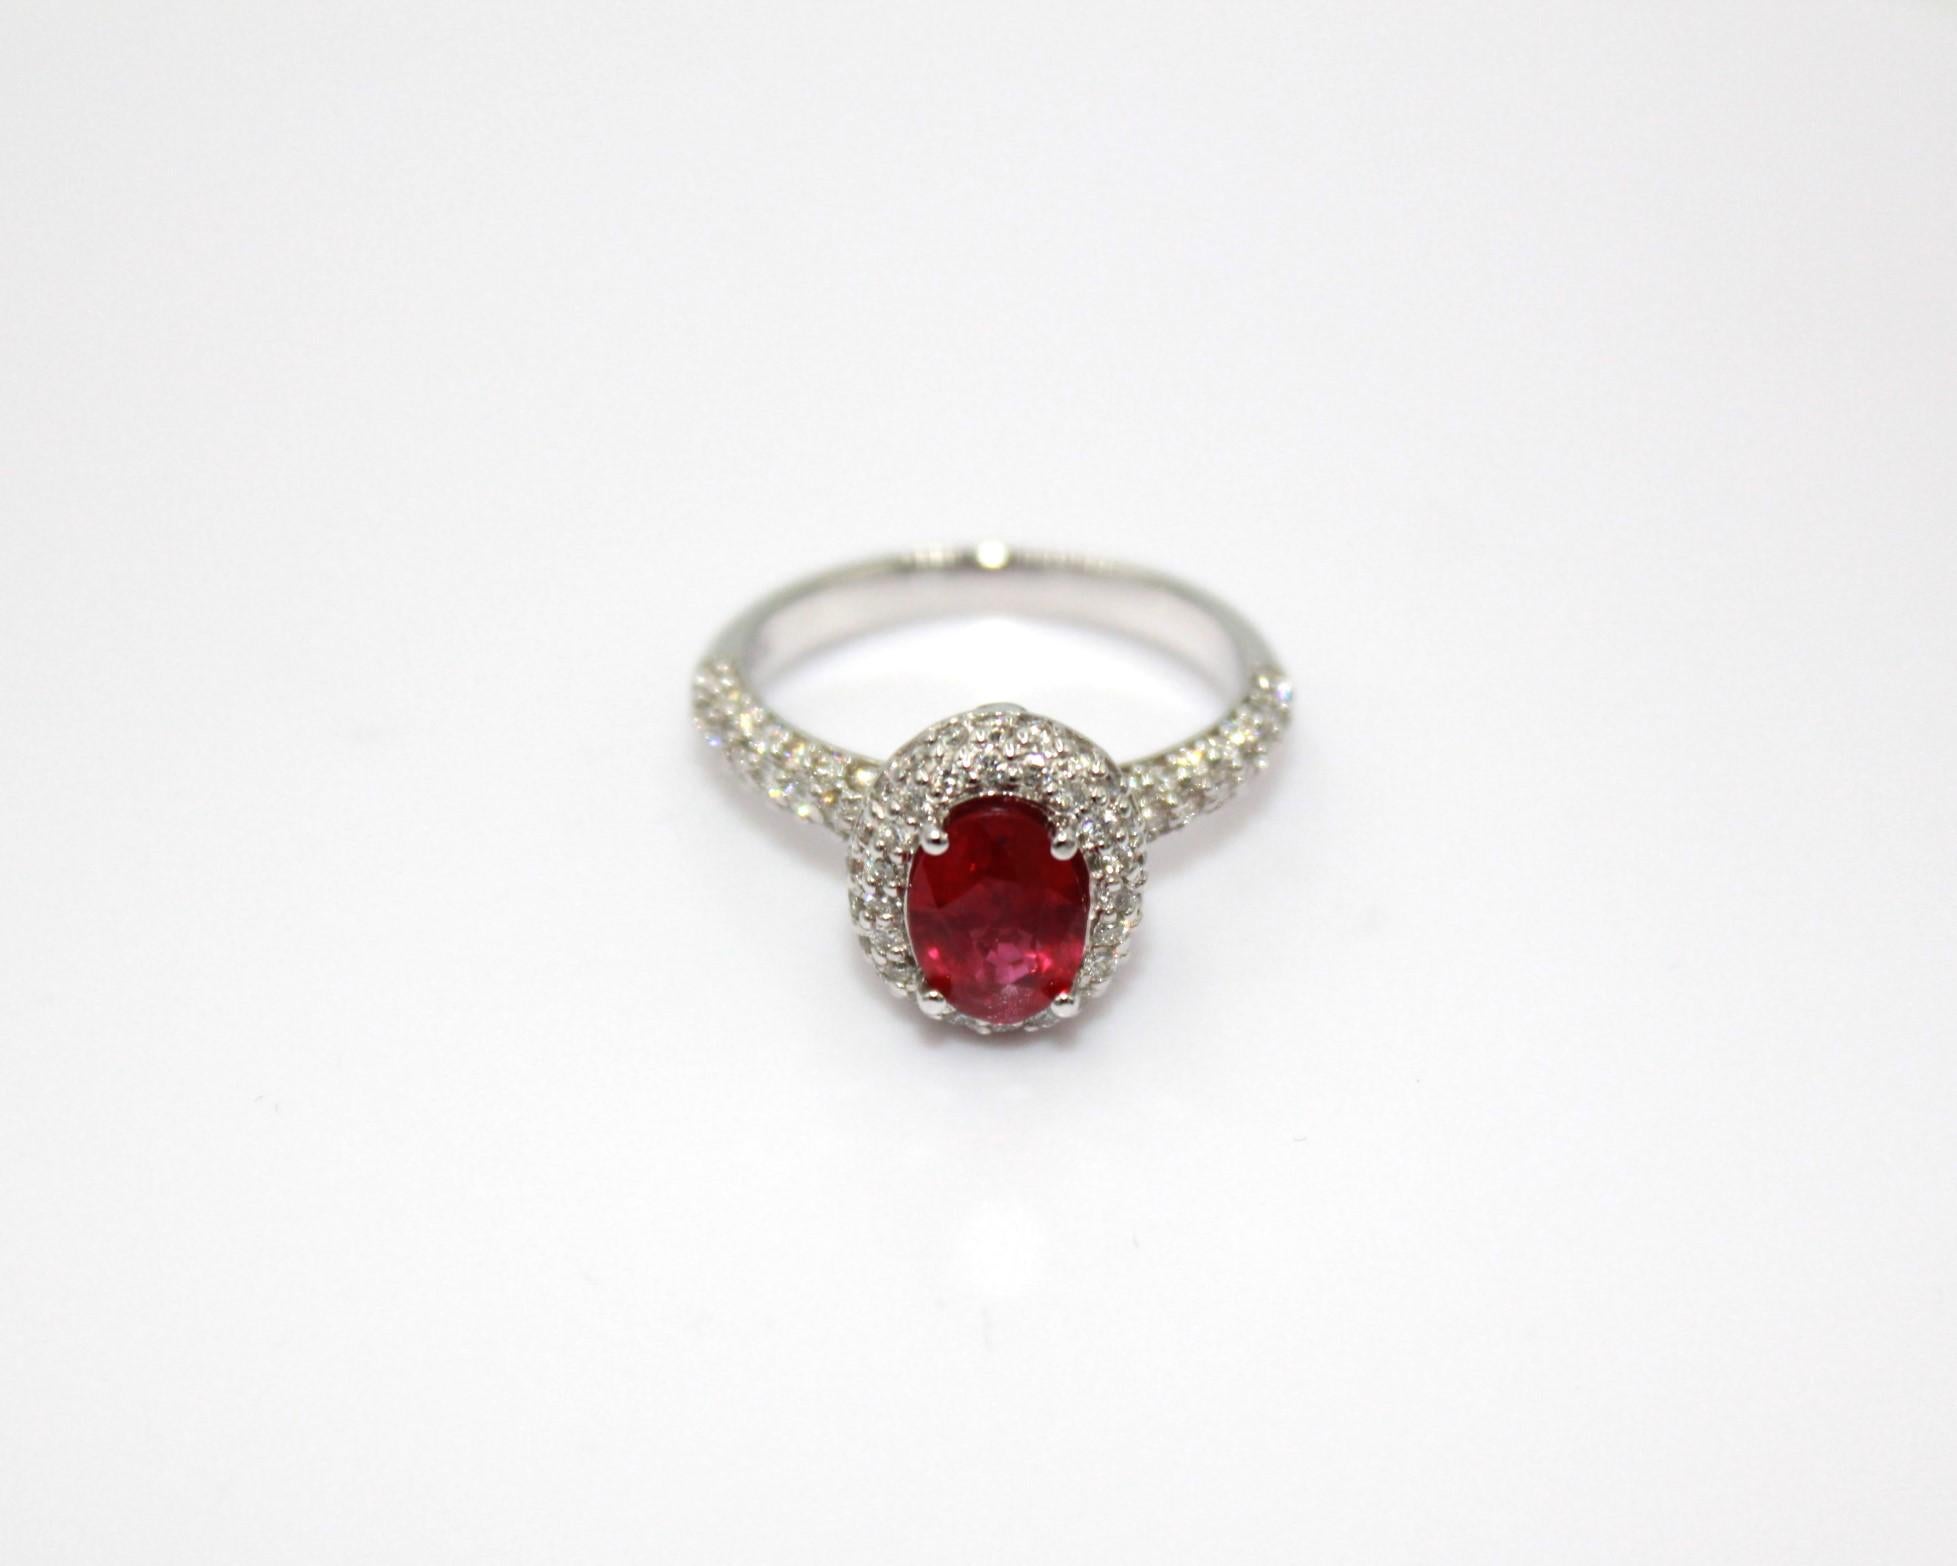 Ovaler Burma-Rubin von 1,36 Karat, umrahmt von 83 runden Diamanten mit einem Gesamtgewicht von 0,61 Karat. 

Dieser atemberaubende Rubin-Diamant-Ring wird Ihre Eleganz und Einzigartigkeit unterstreichen. 

Artikel-Details:
- Art: Ring
- Metall: 18K